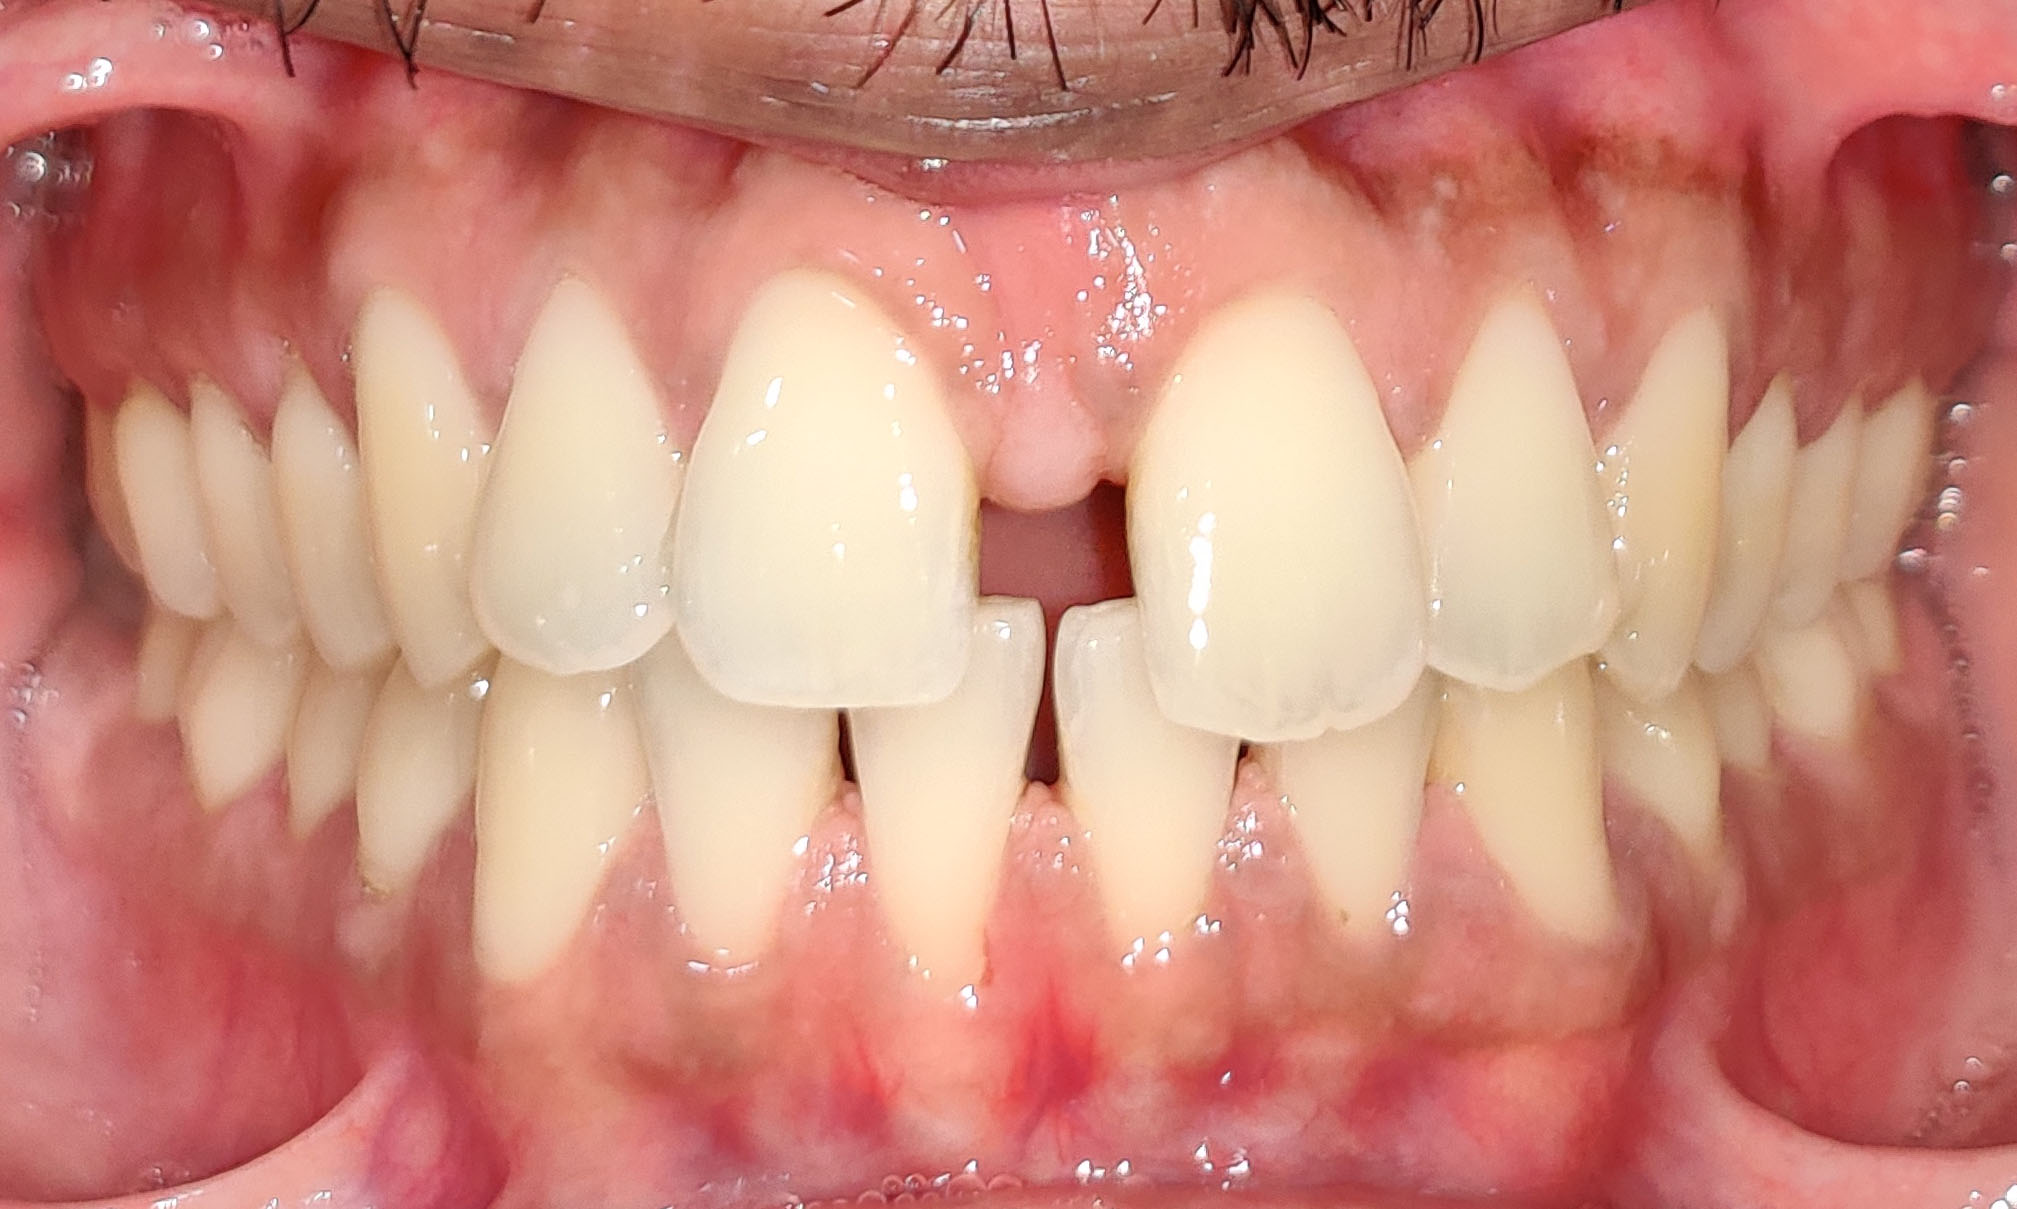 Aligner Treatment of spaces between teeth